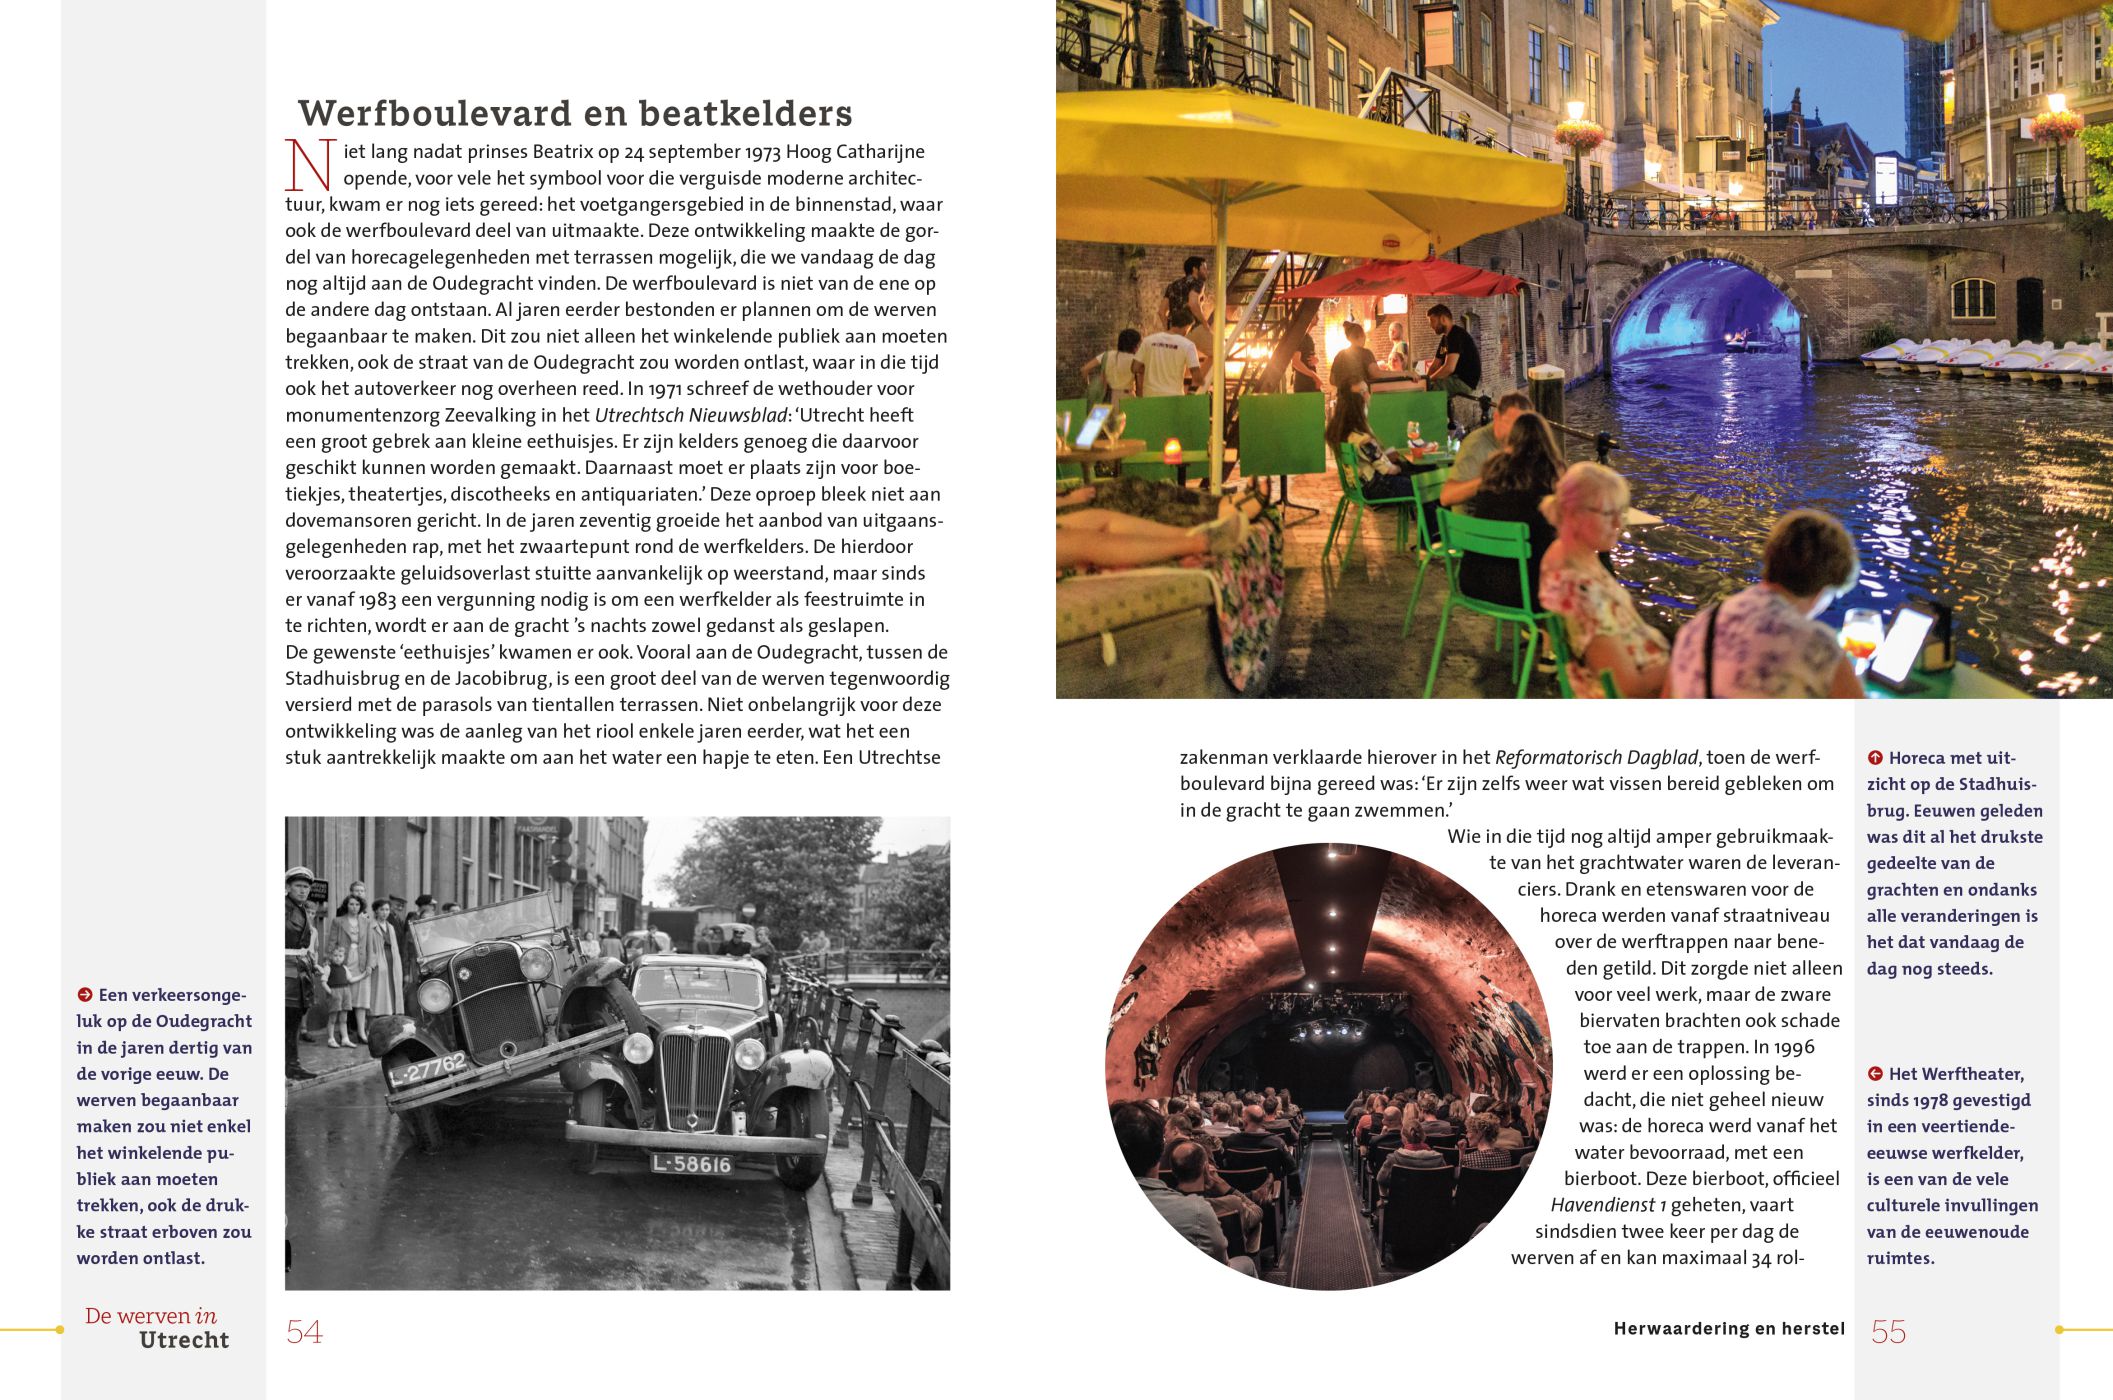 Inkijkexemplaar van het boek: <em>De werven in Utrecht. Eeuwenoude haven aan de gracht</em> - © Uitgeverij Matrijs